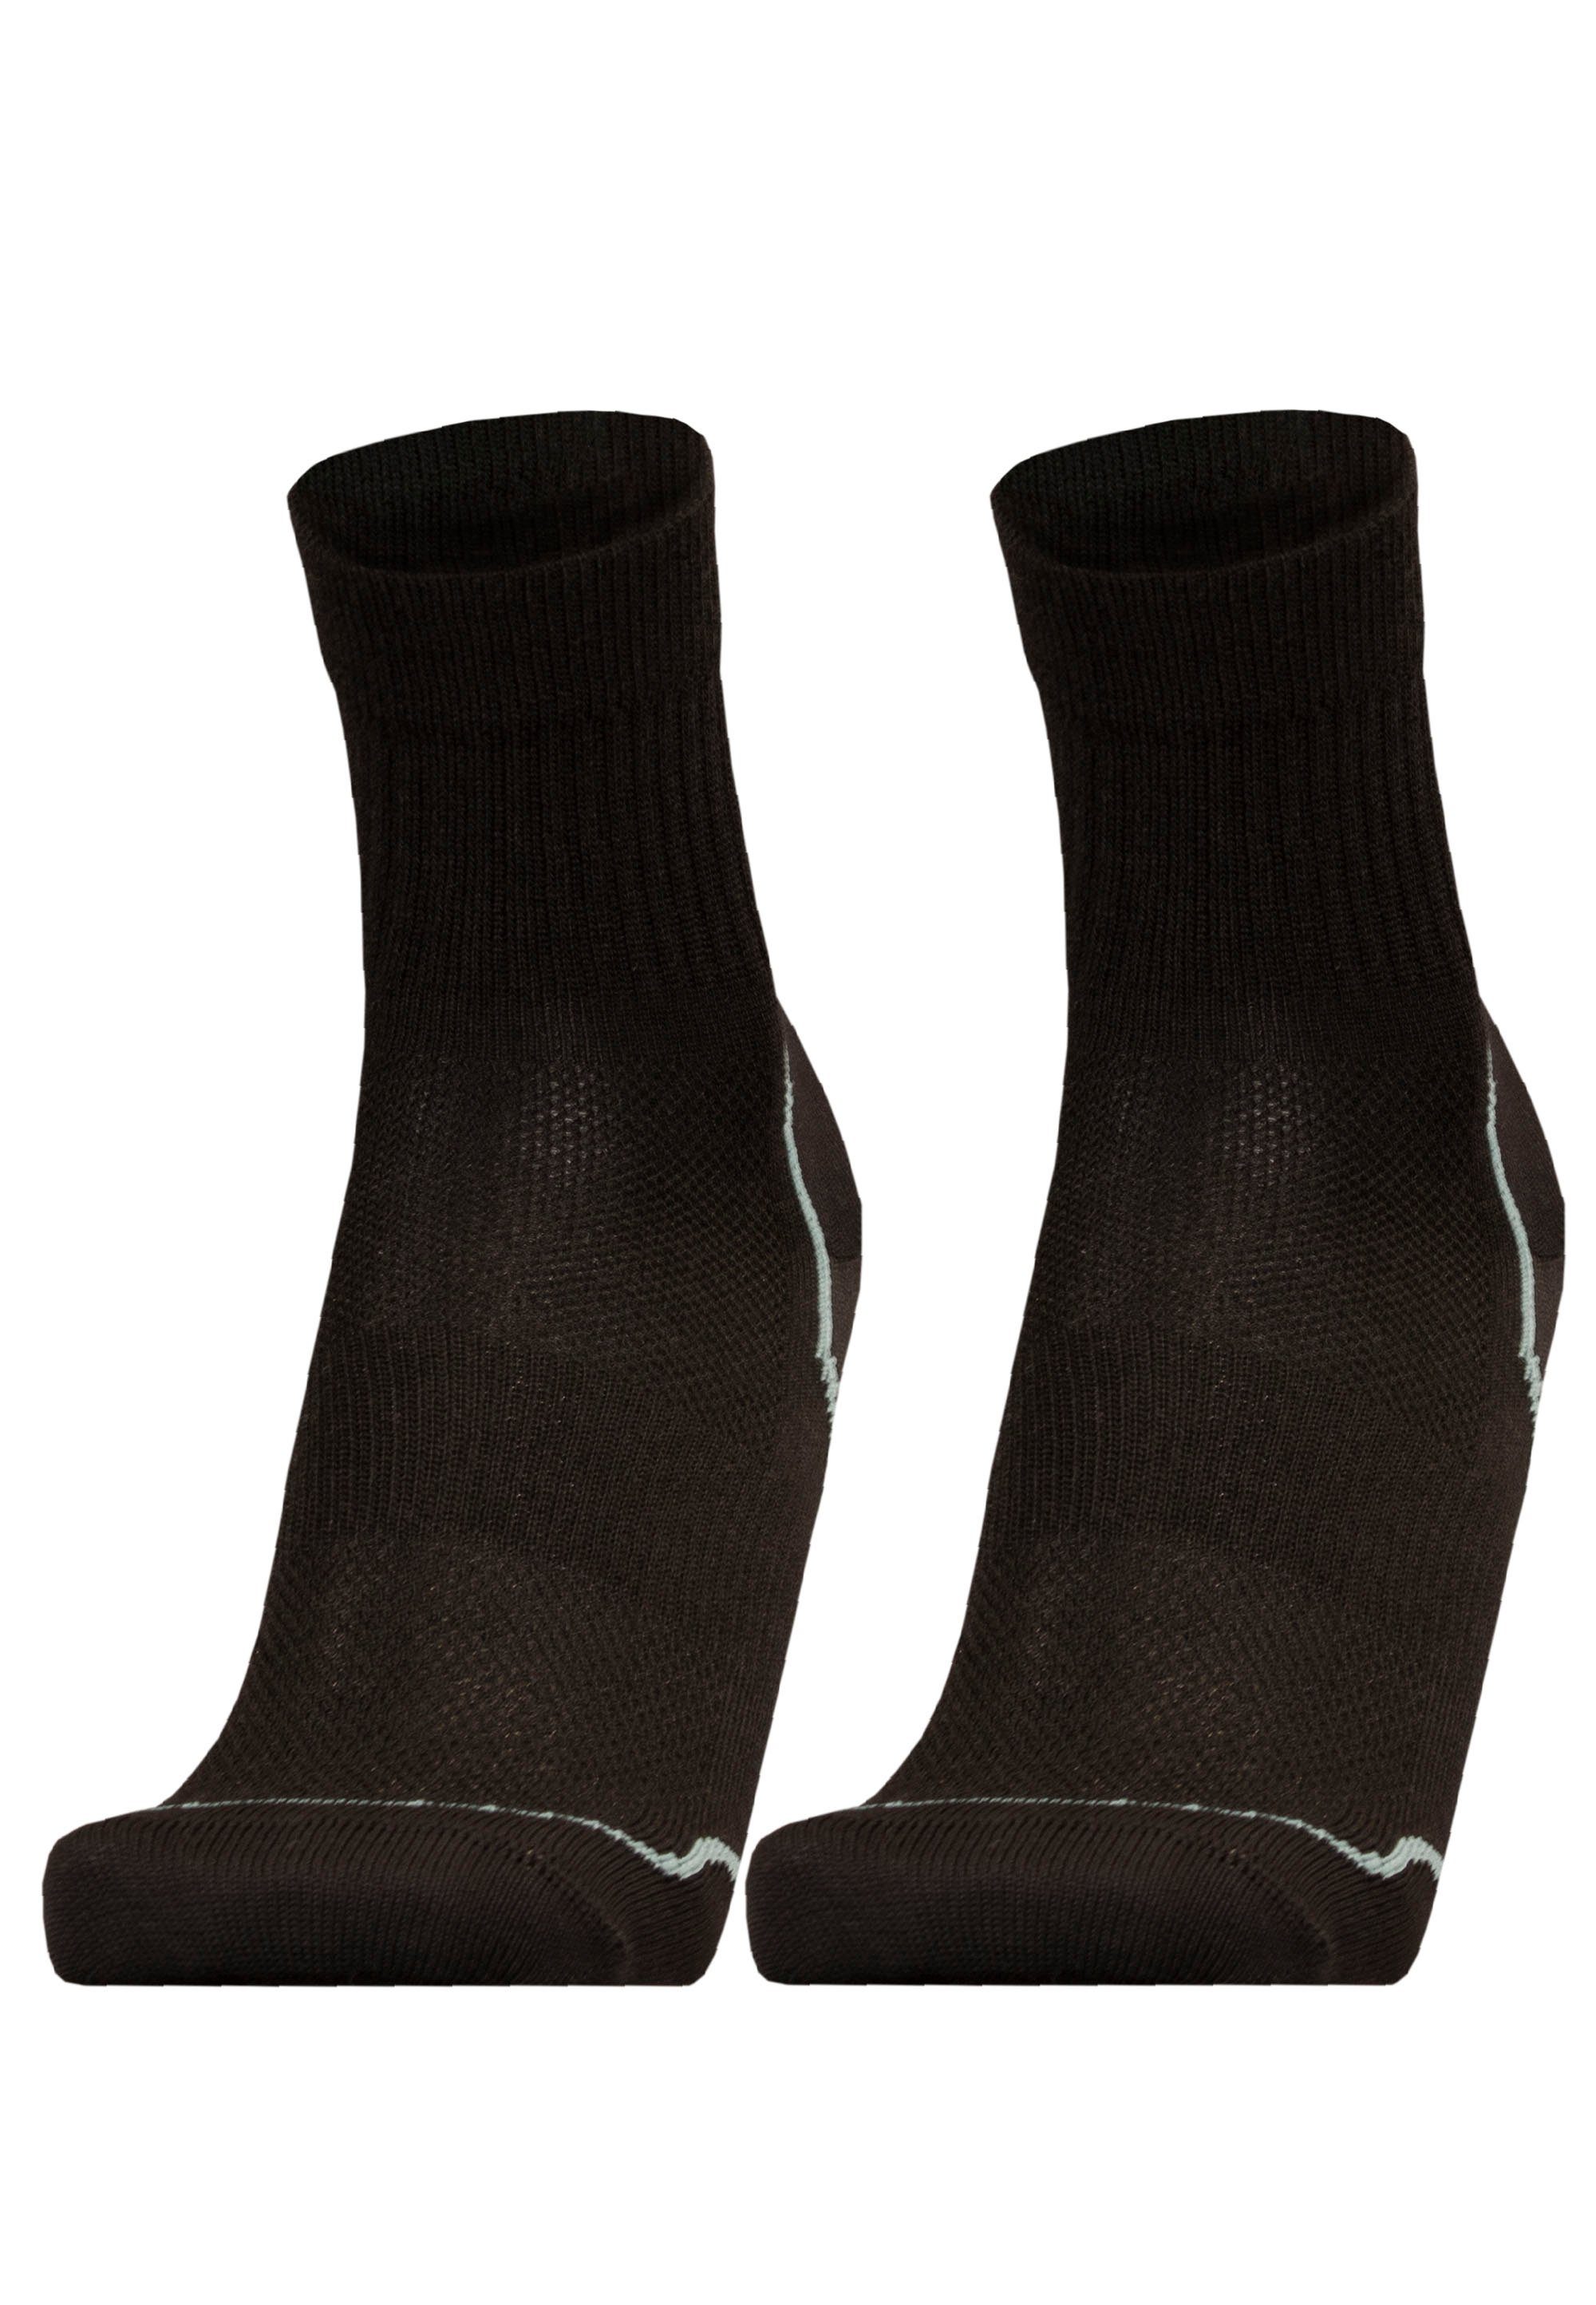 schwarz-grau reibende UphillSport ohne (2-Paar) Nähte Socken